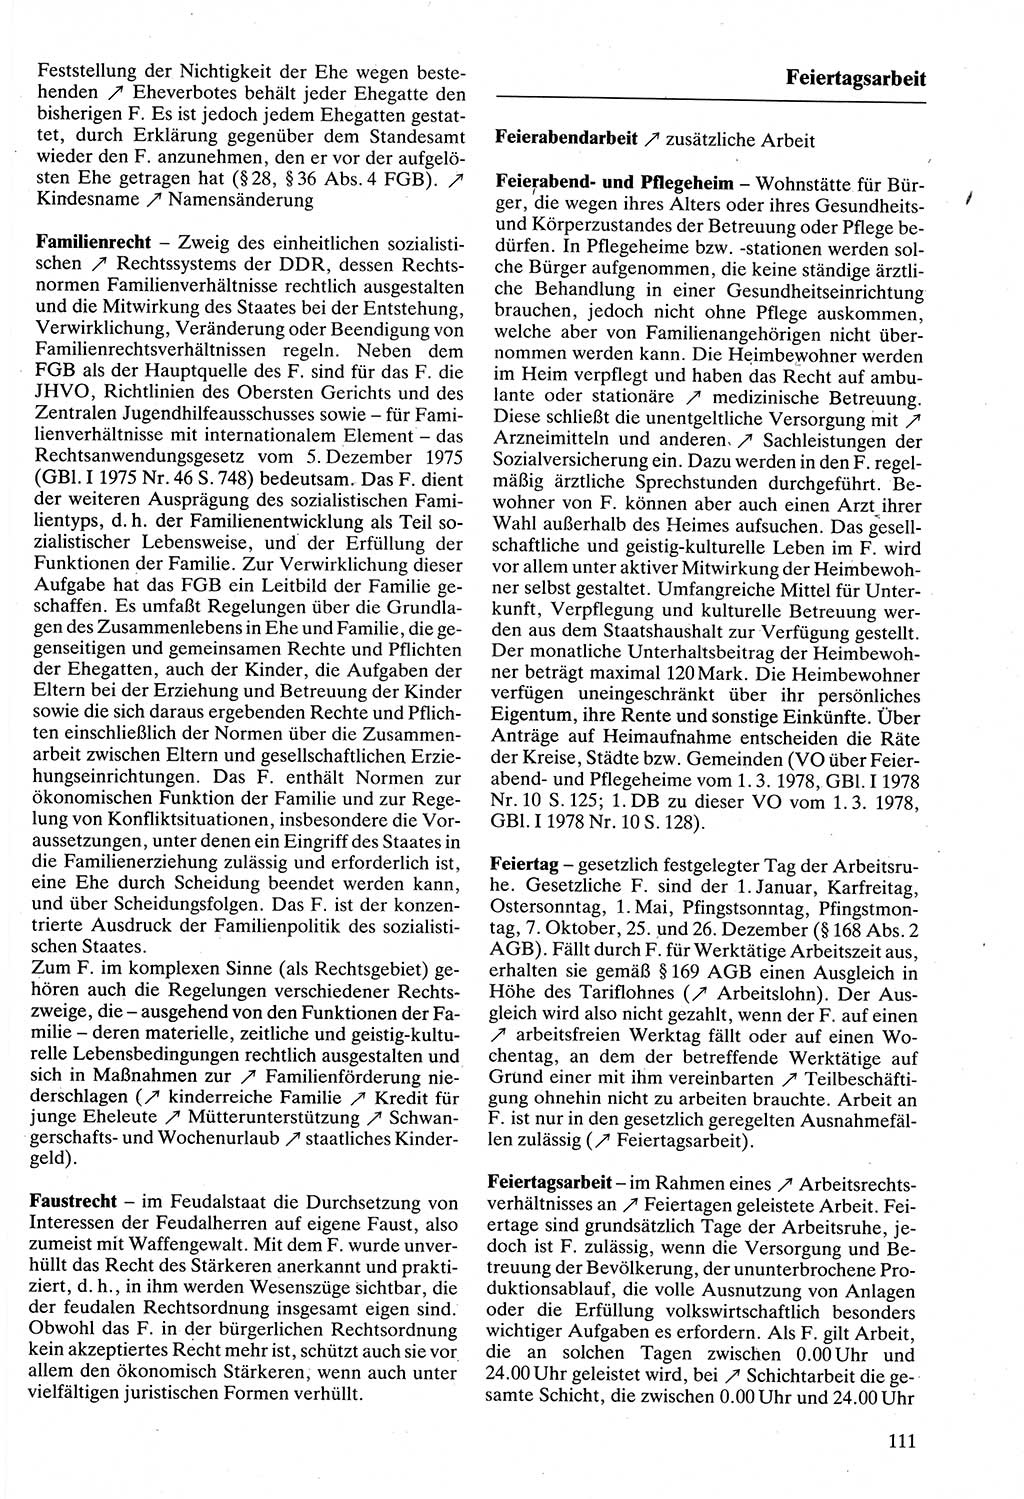 Rechtslexikon [Deutsche Demokratische Republik (DDR)] 1988, Seite 111 (Rechtslex. DDR 1988, S. 111)